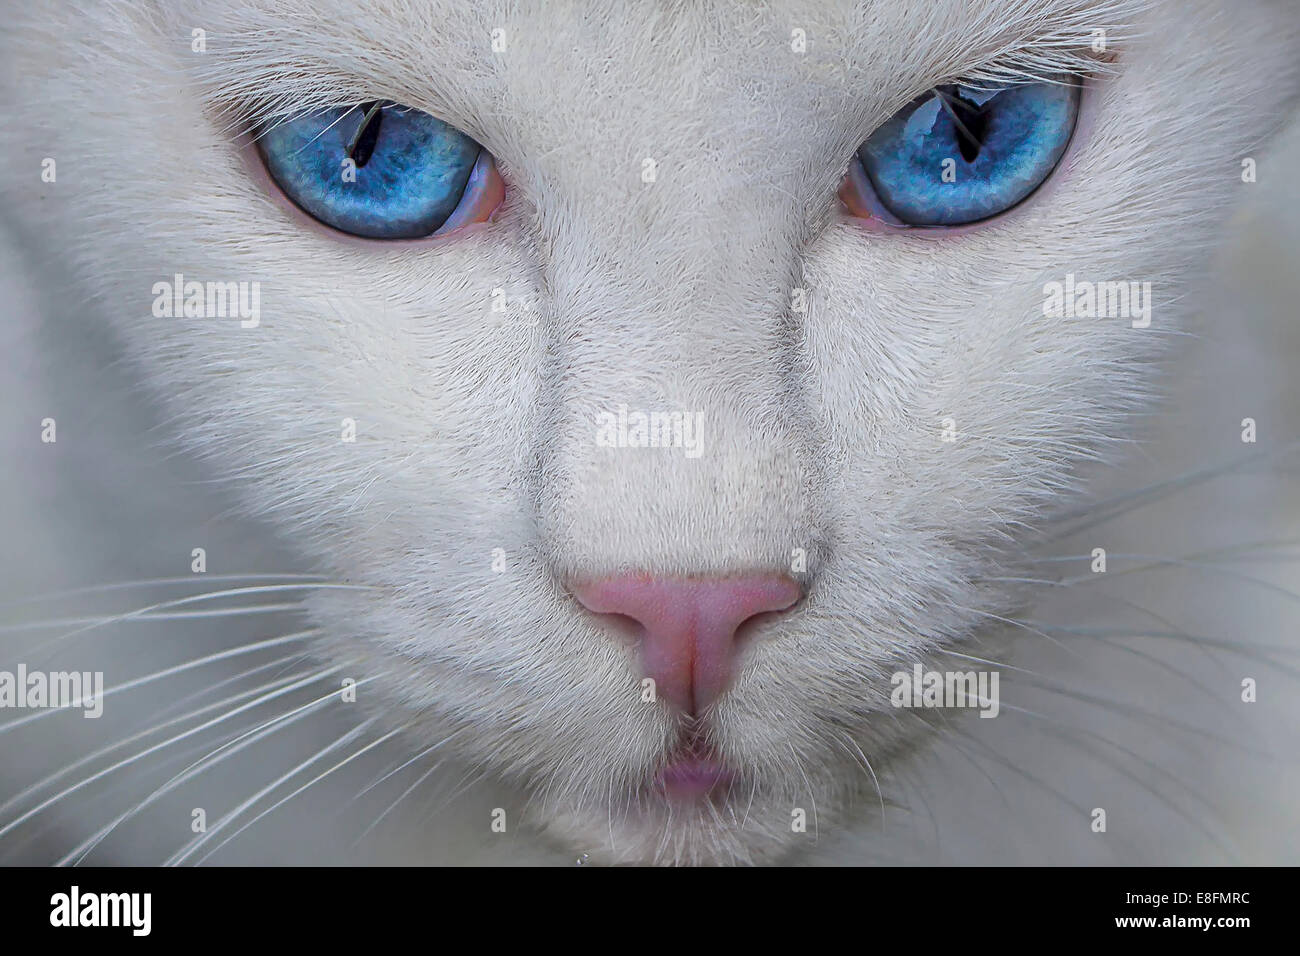 Katzenauge: Blau, Kreide, Makro, Zeichnung von michste